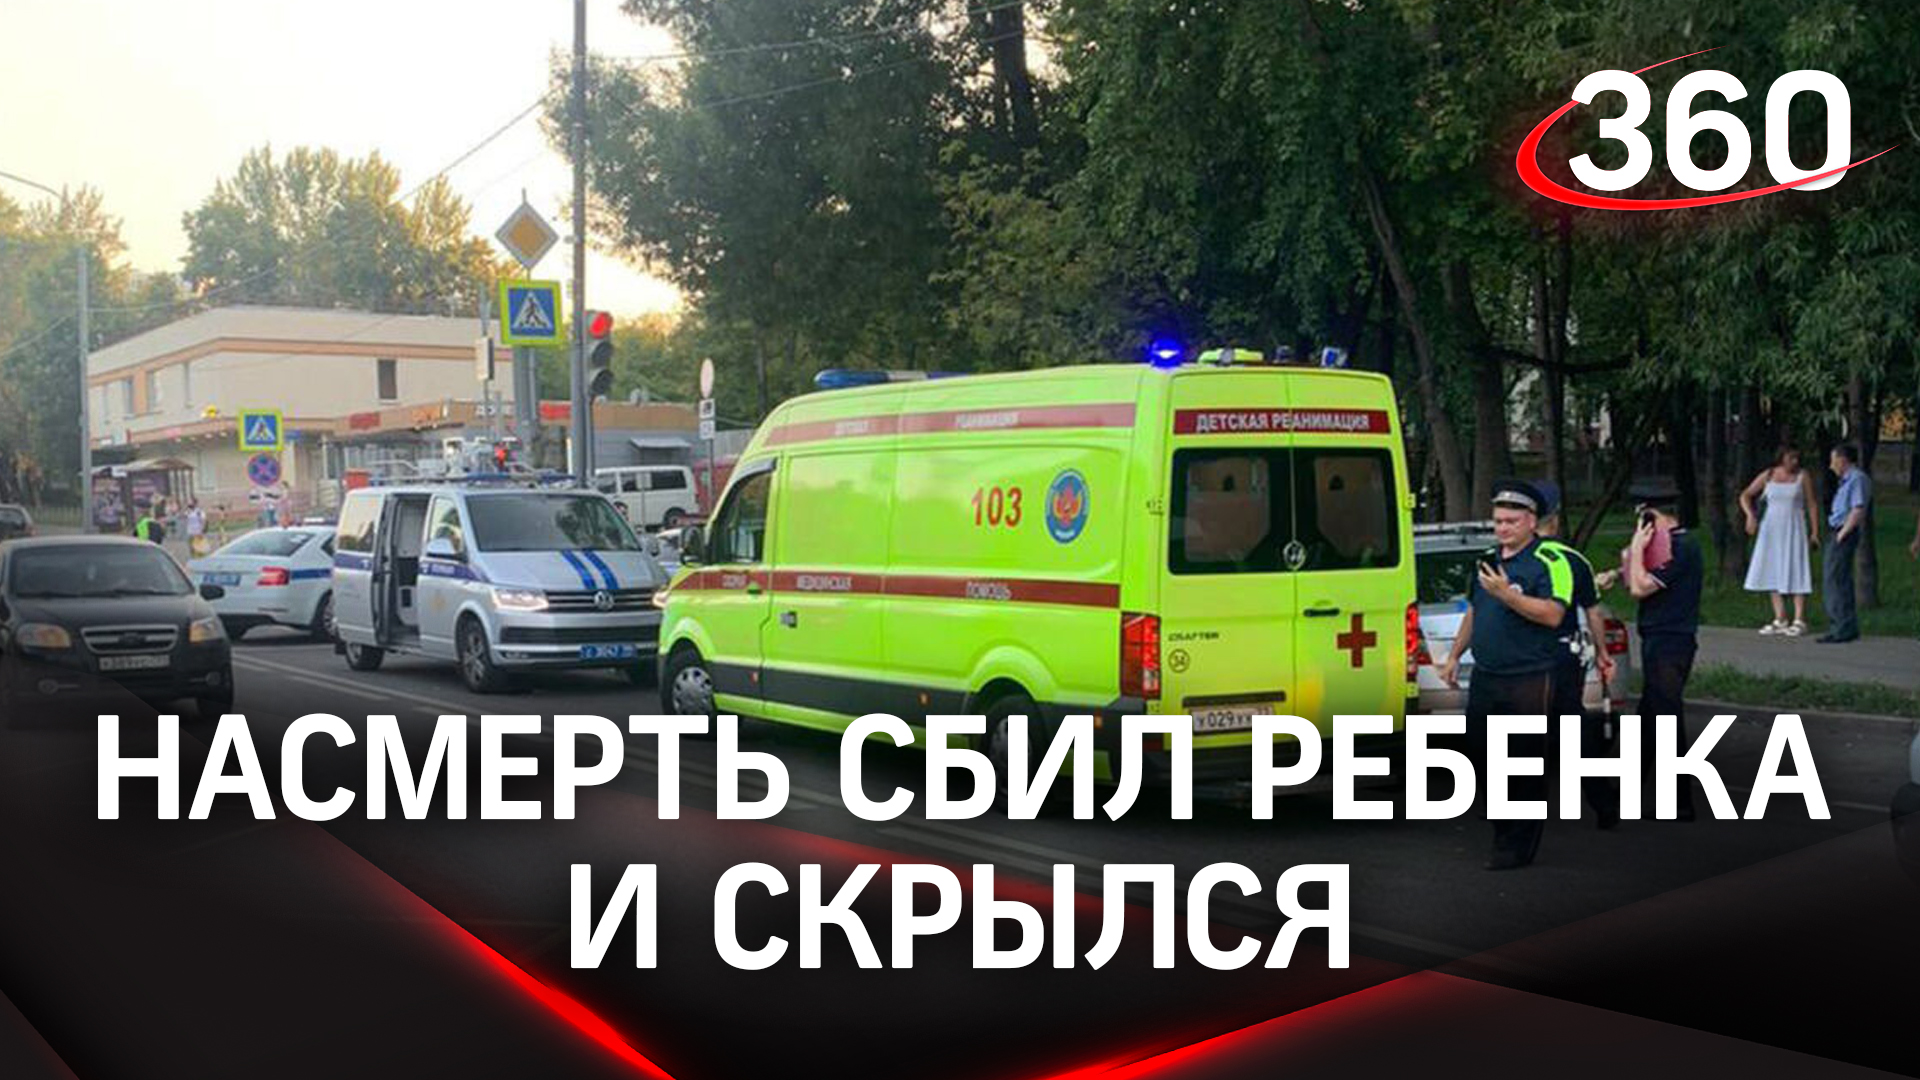 Водитель насмерть сбил ребёнка и скрылся: подробности ДТП в Москве